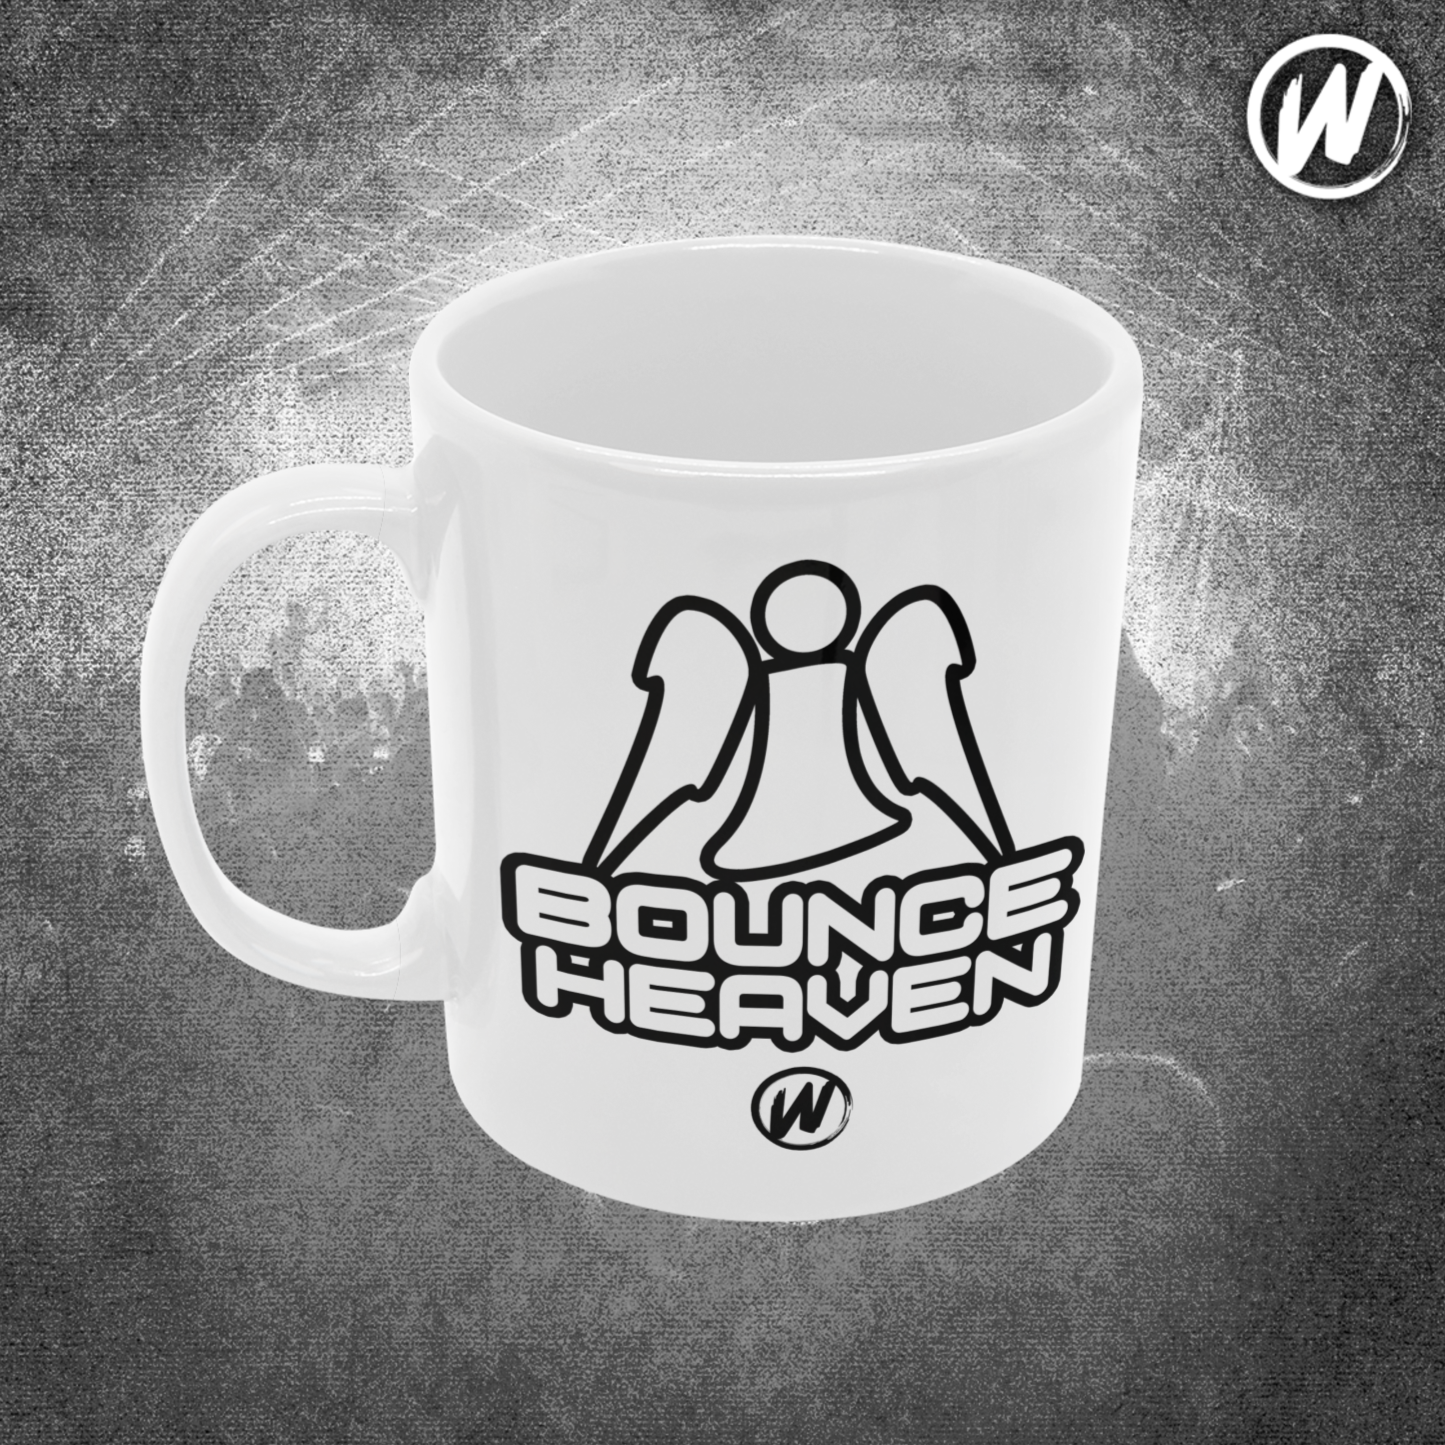 Bounce Heaven Mug